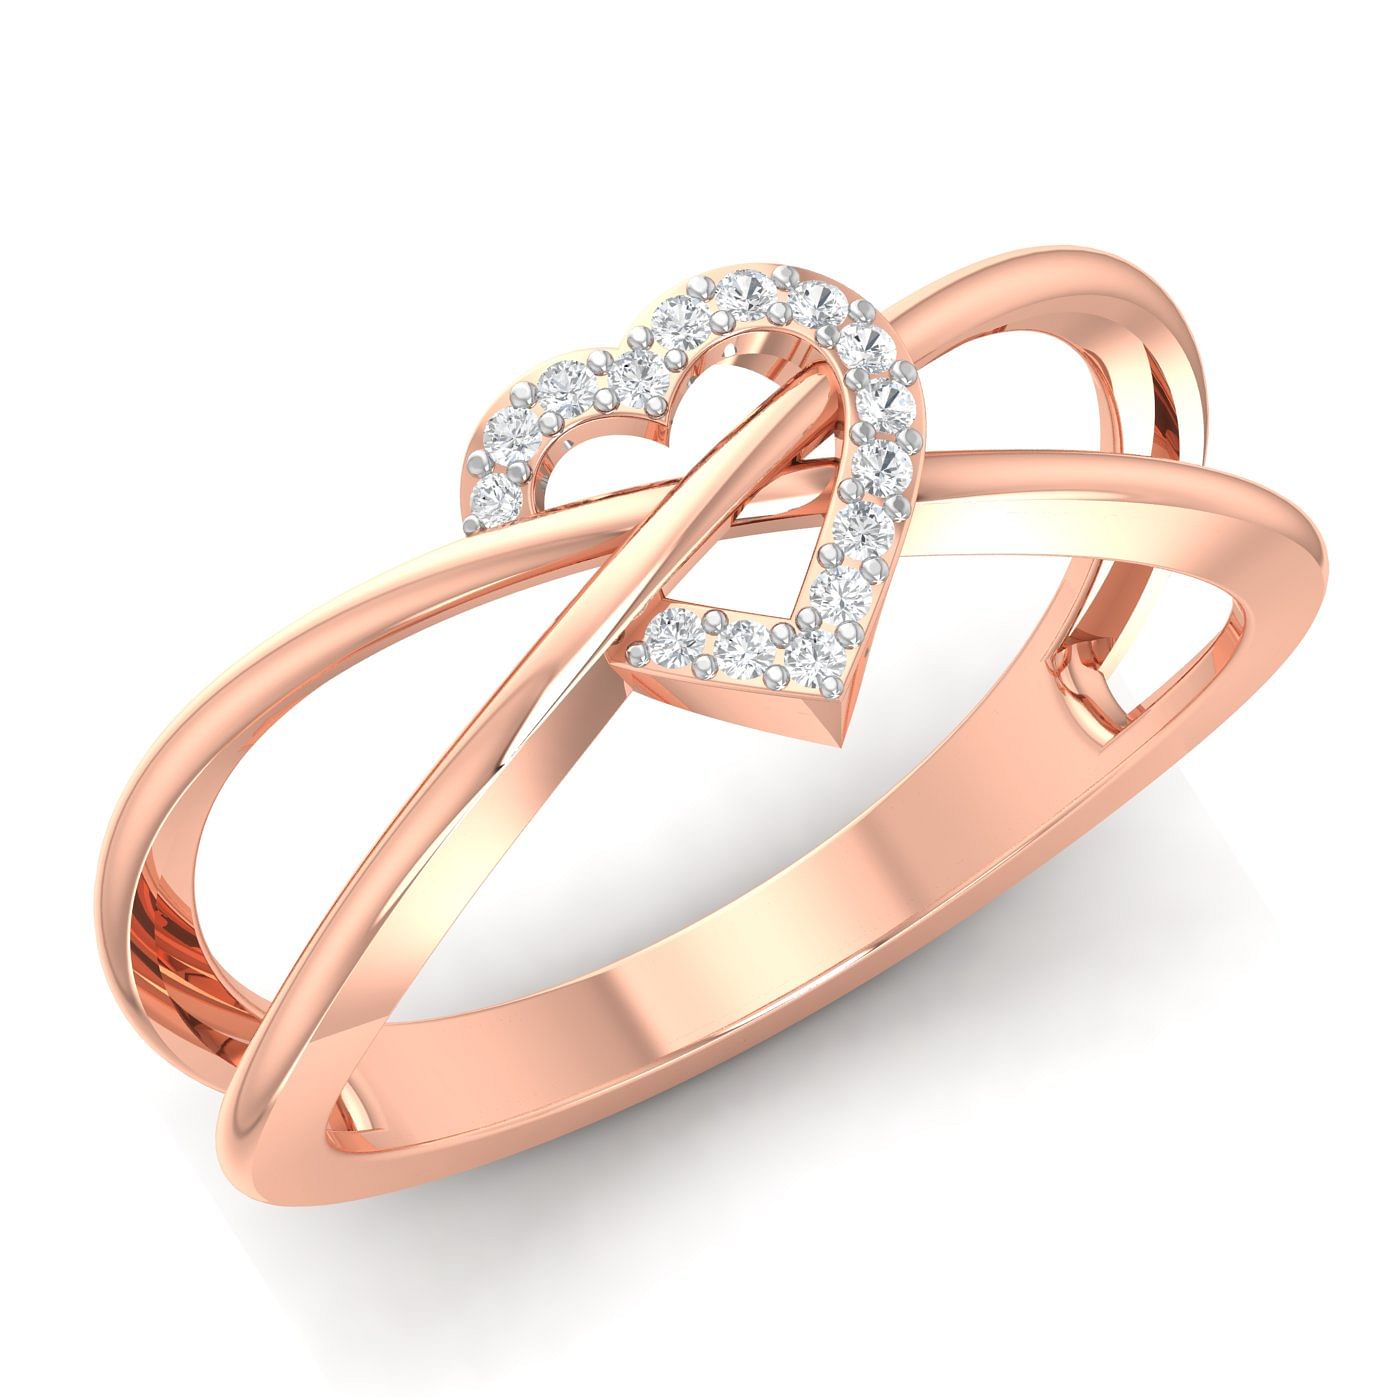 Diamond Heart Promise Ring Rose Gold For Anniversary Gift